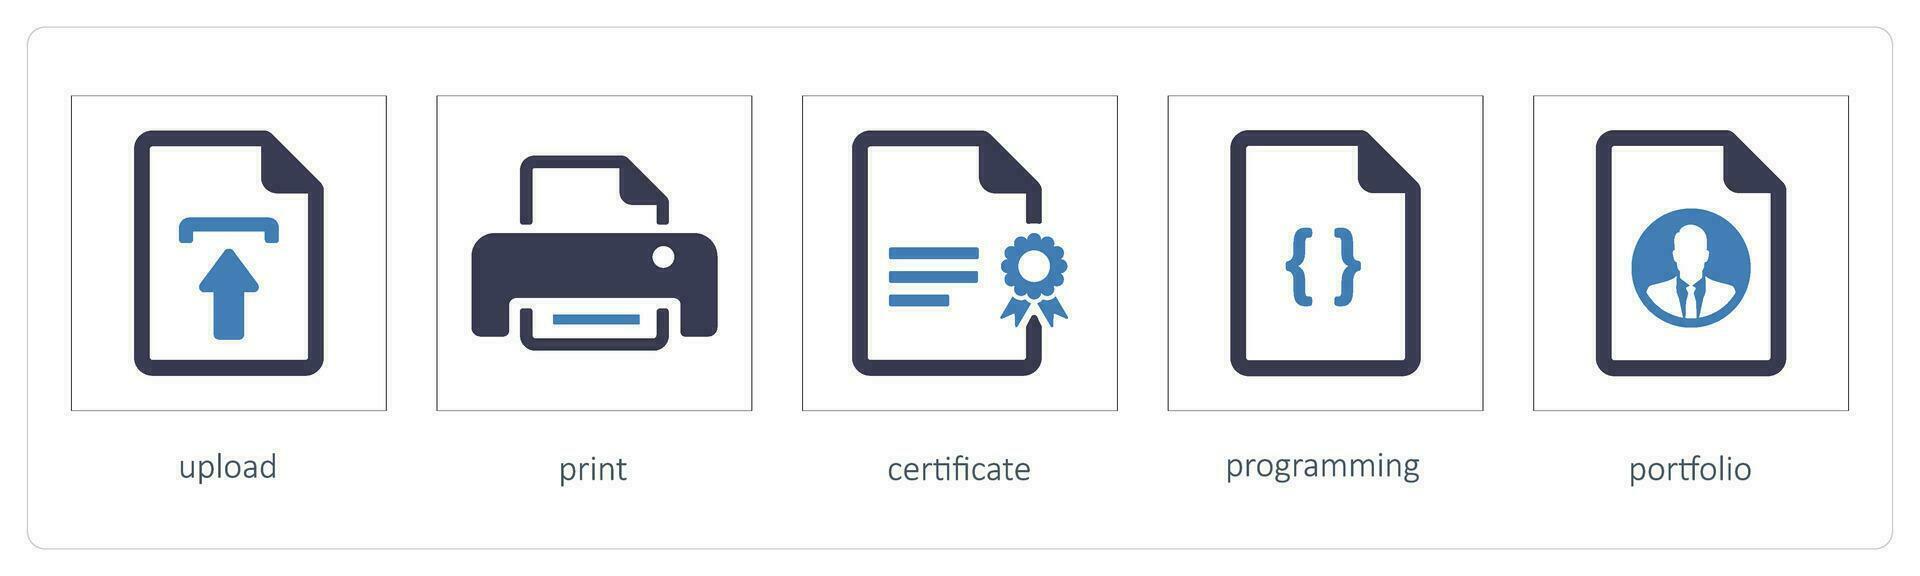 upload, print, certificate vector